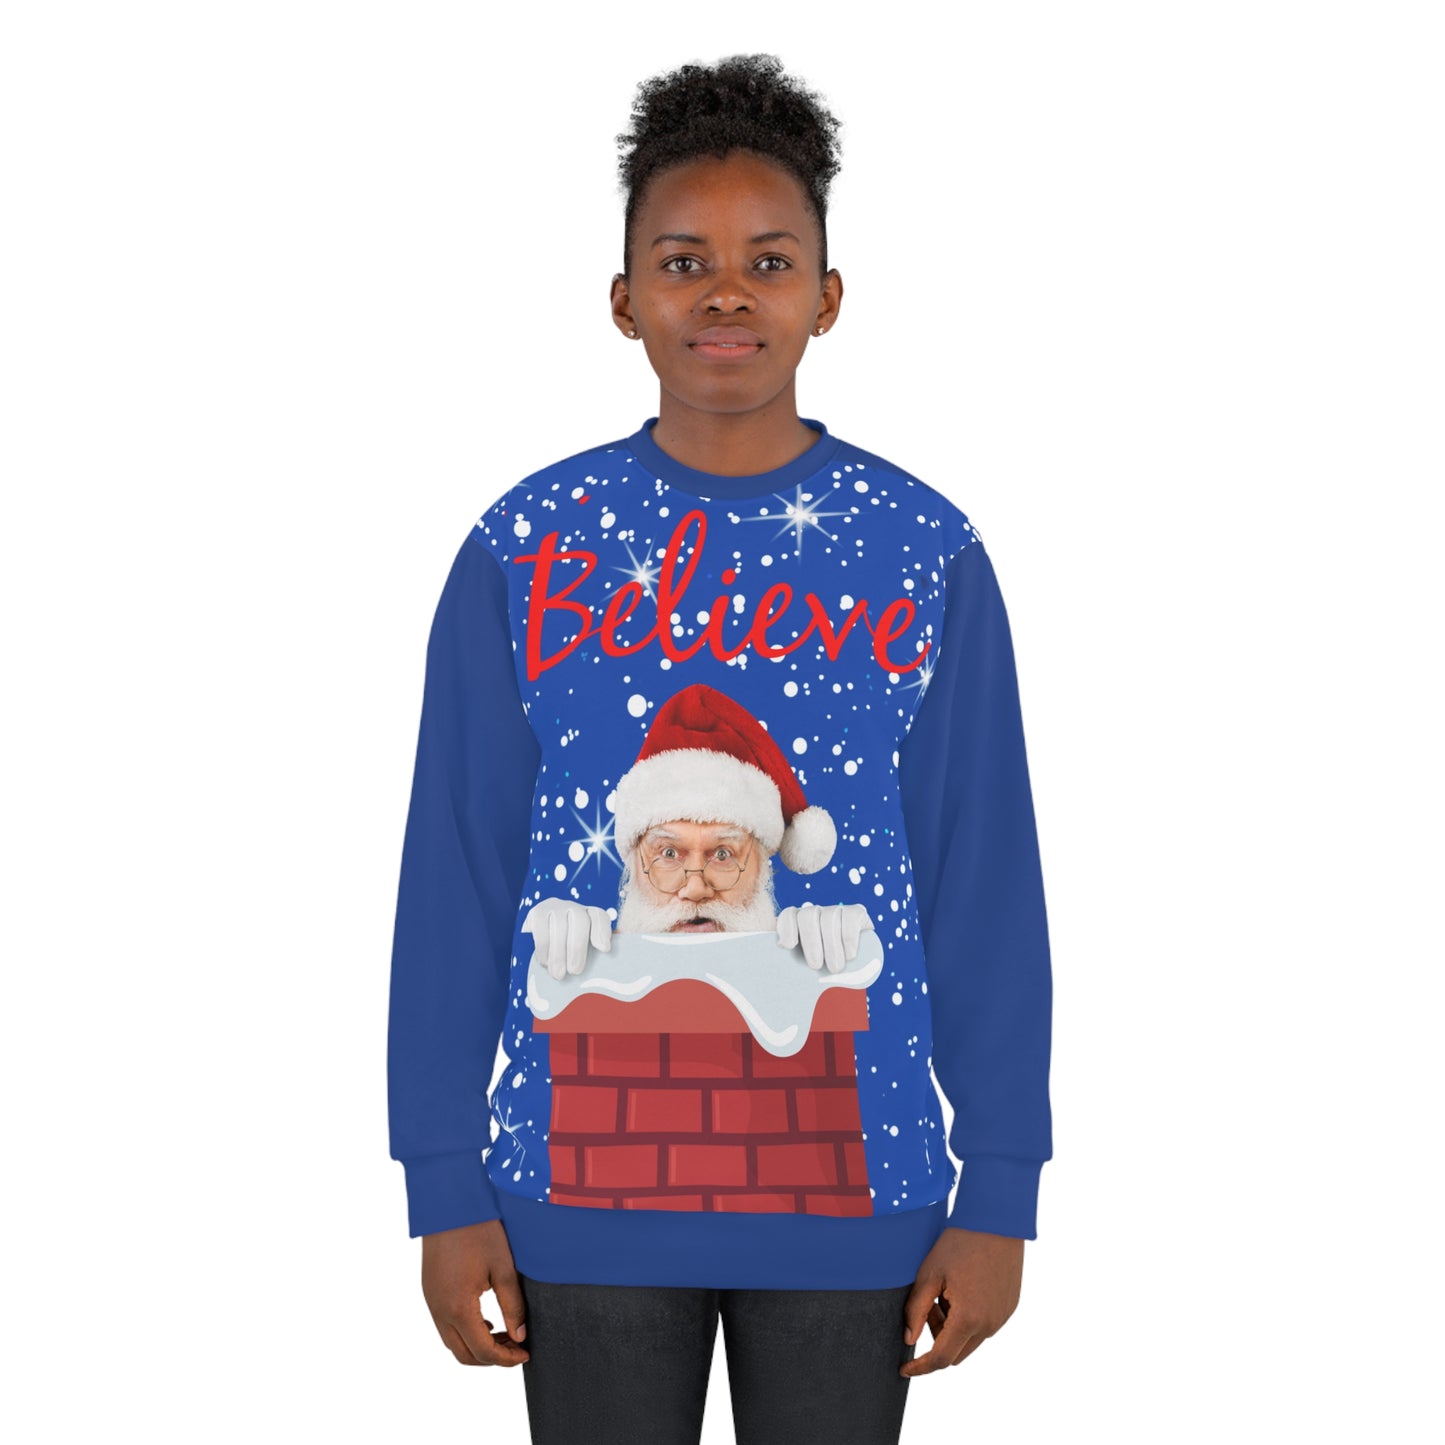 Believe Ugly Christmas Sweatshirt, Santa sweatshirt for women, unisex santa sweatshirt, Retro Christmas sweatshirt, Holiday Clothing, Classic Christmas, Unisex Sweatshirt